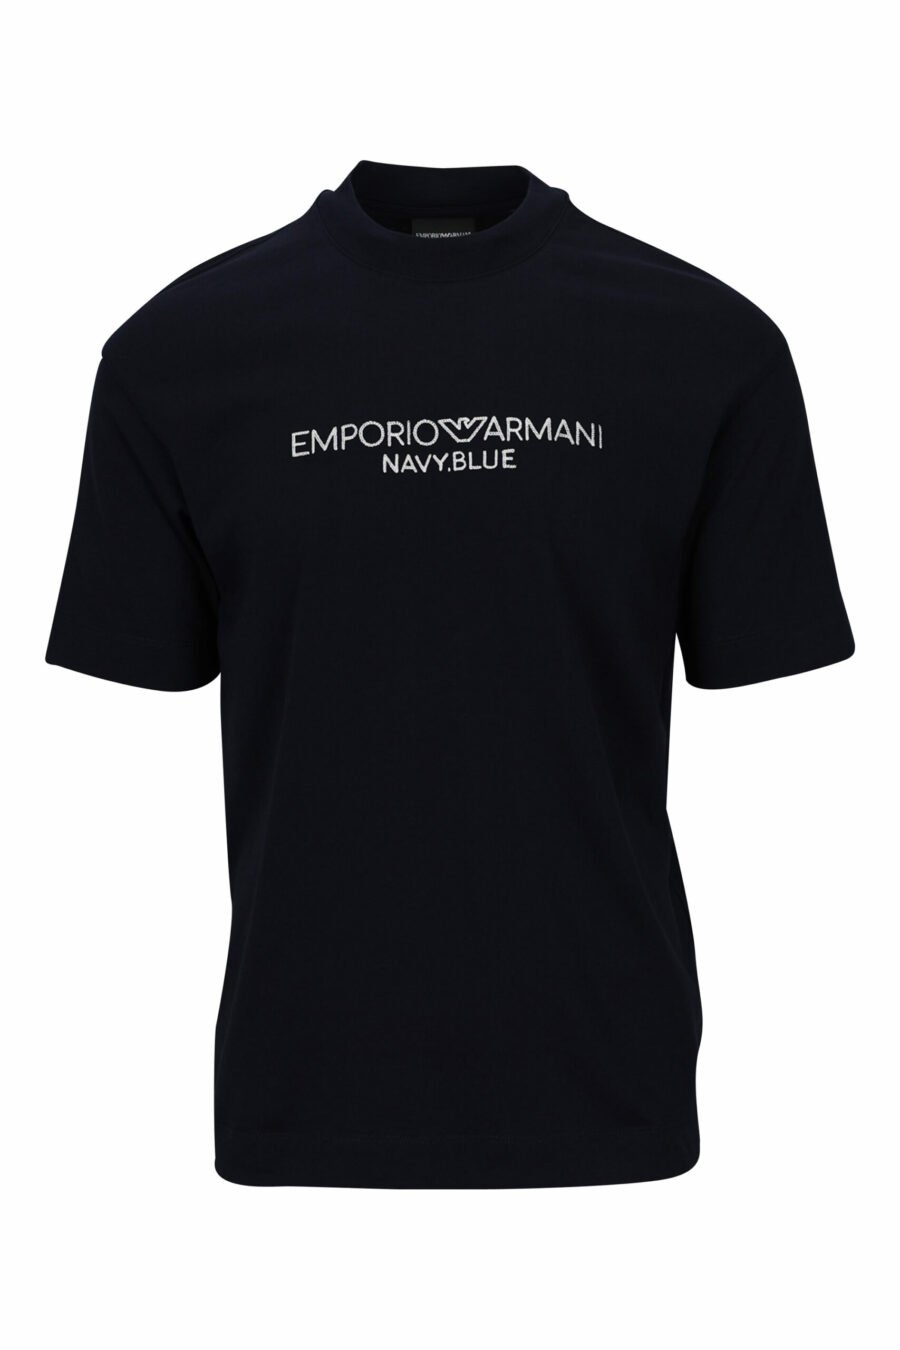 Marineblaues T-Shirt mit zentriertem Logo - 8057767459796 skaliert